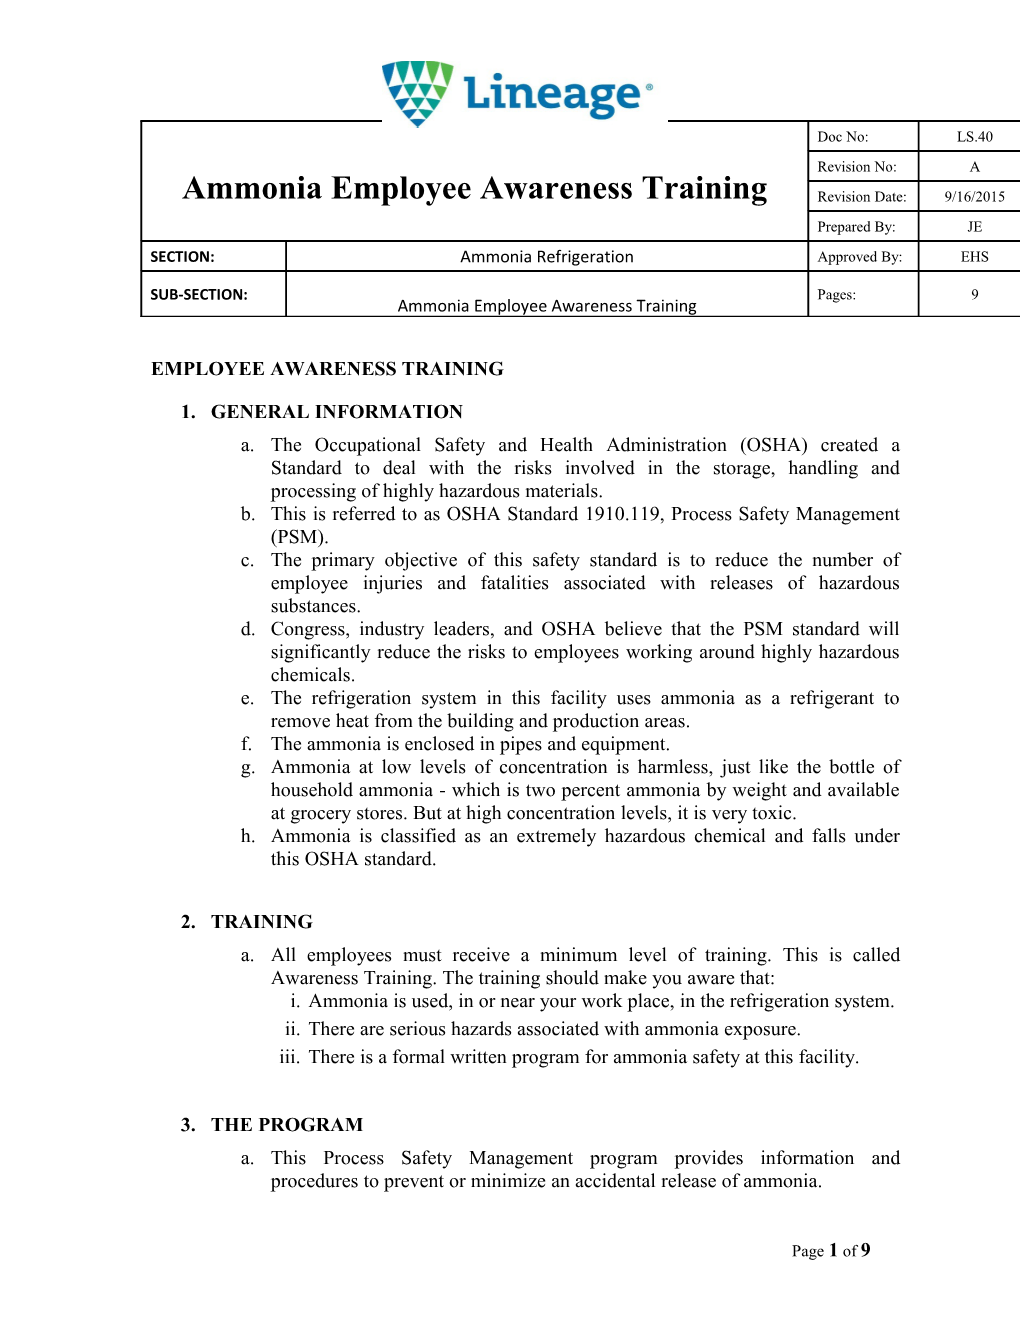 Employee Awareness Training